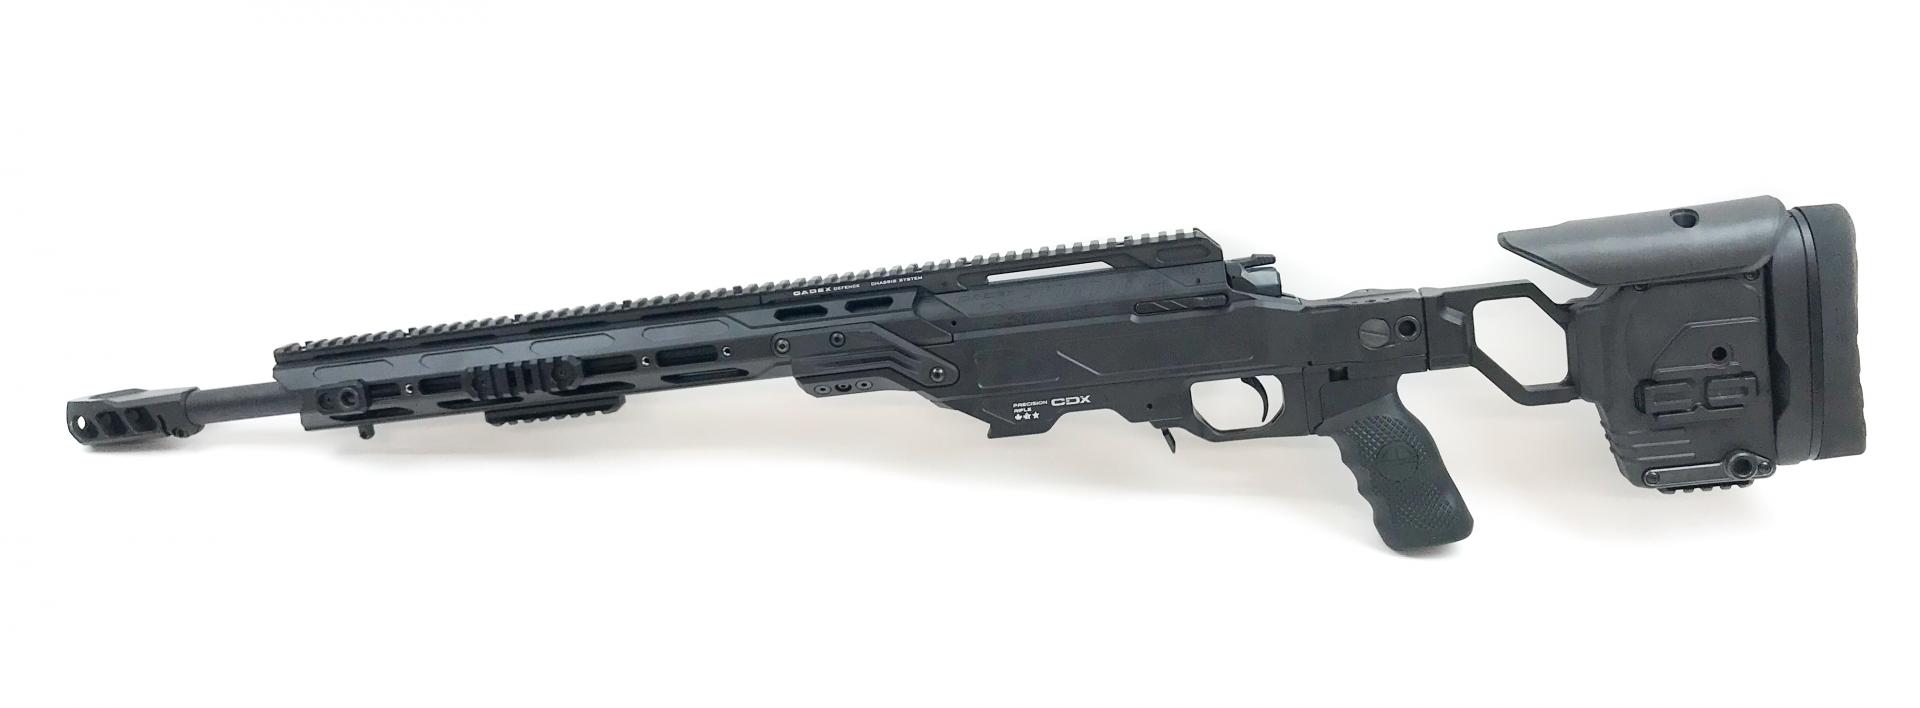 CADEX DEFENSE CDX-30 Lite rifle 308 WIN CDX30-LITE-308-20-BLK